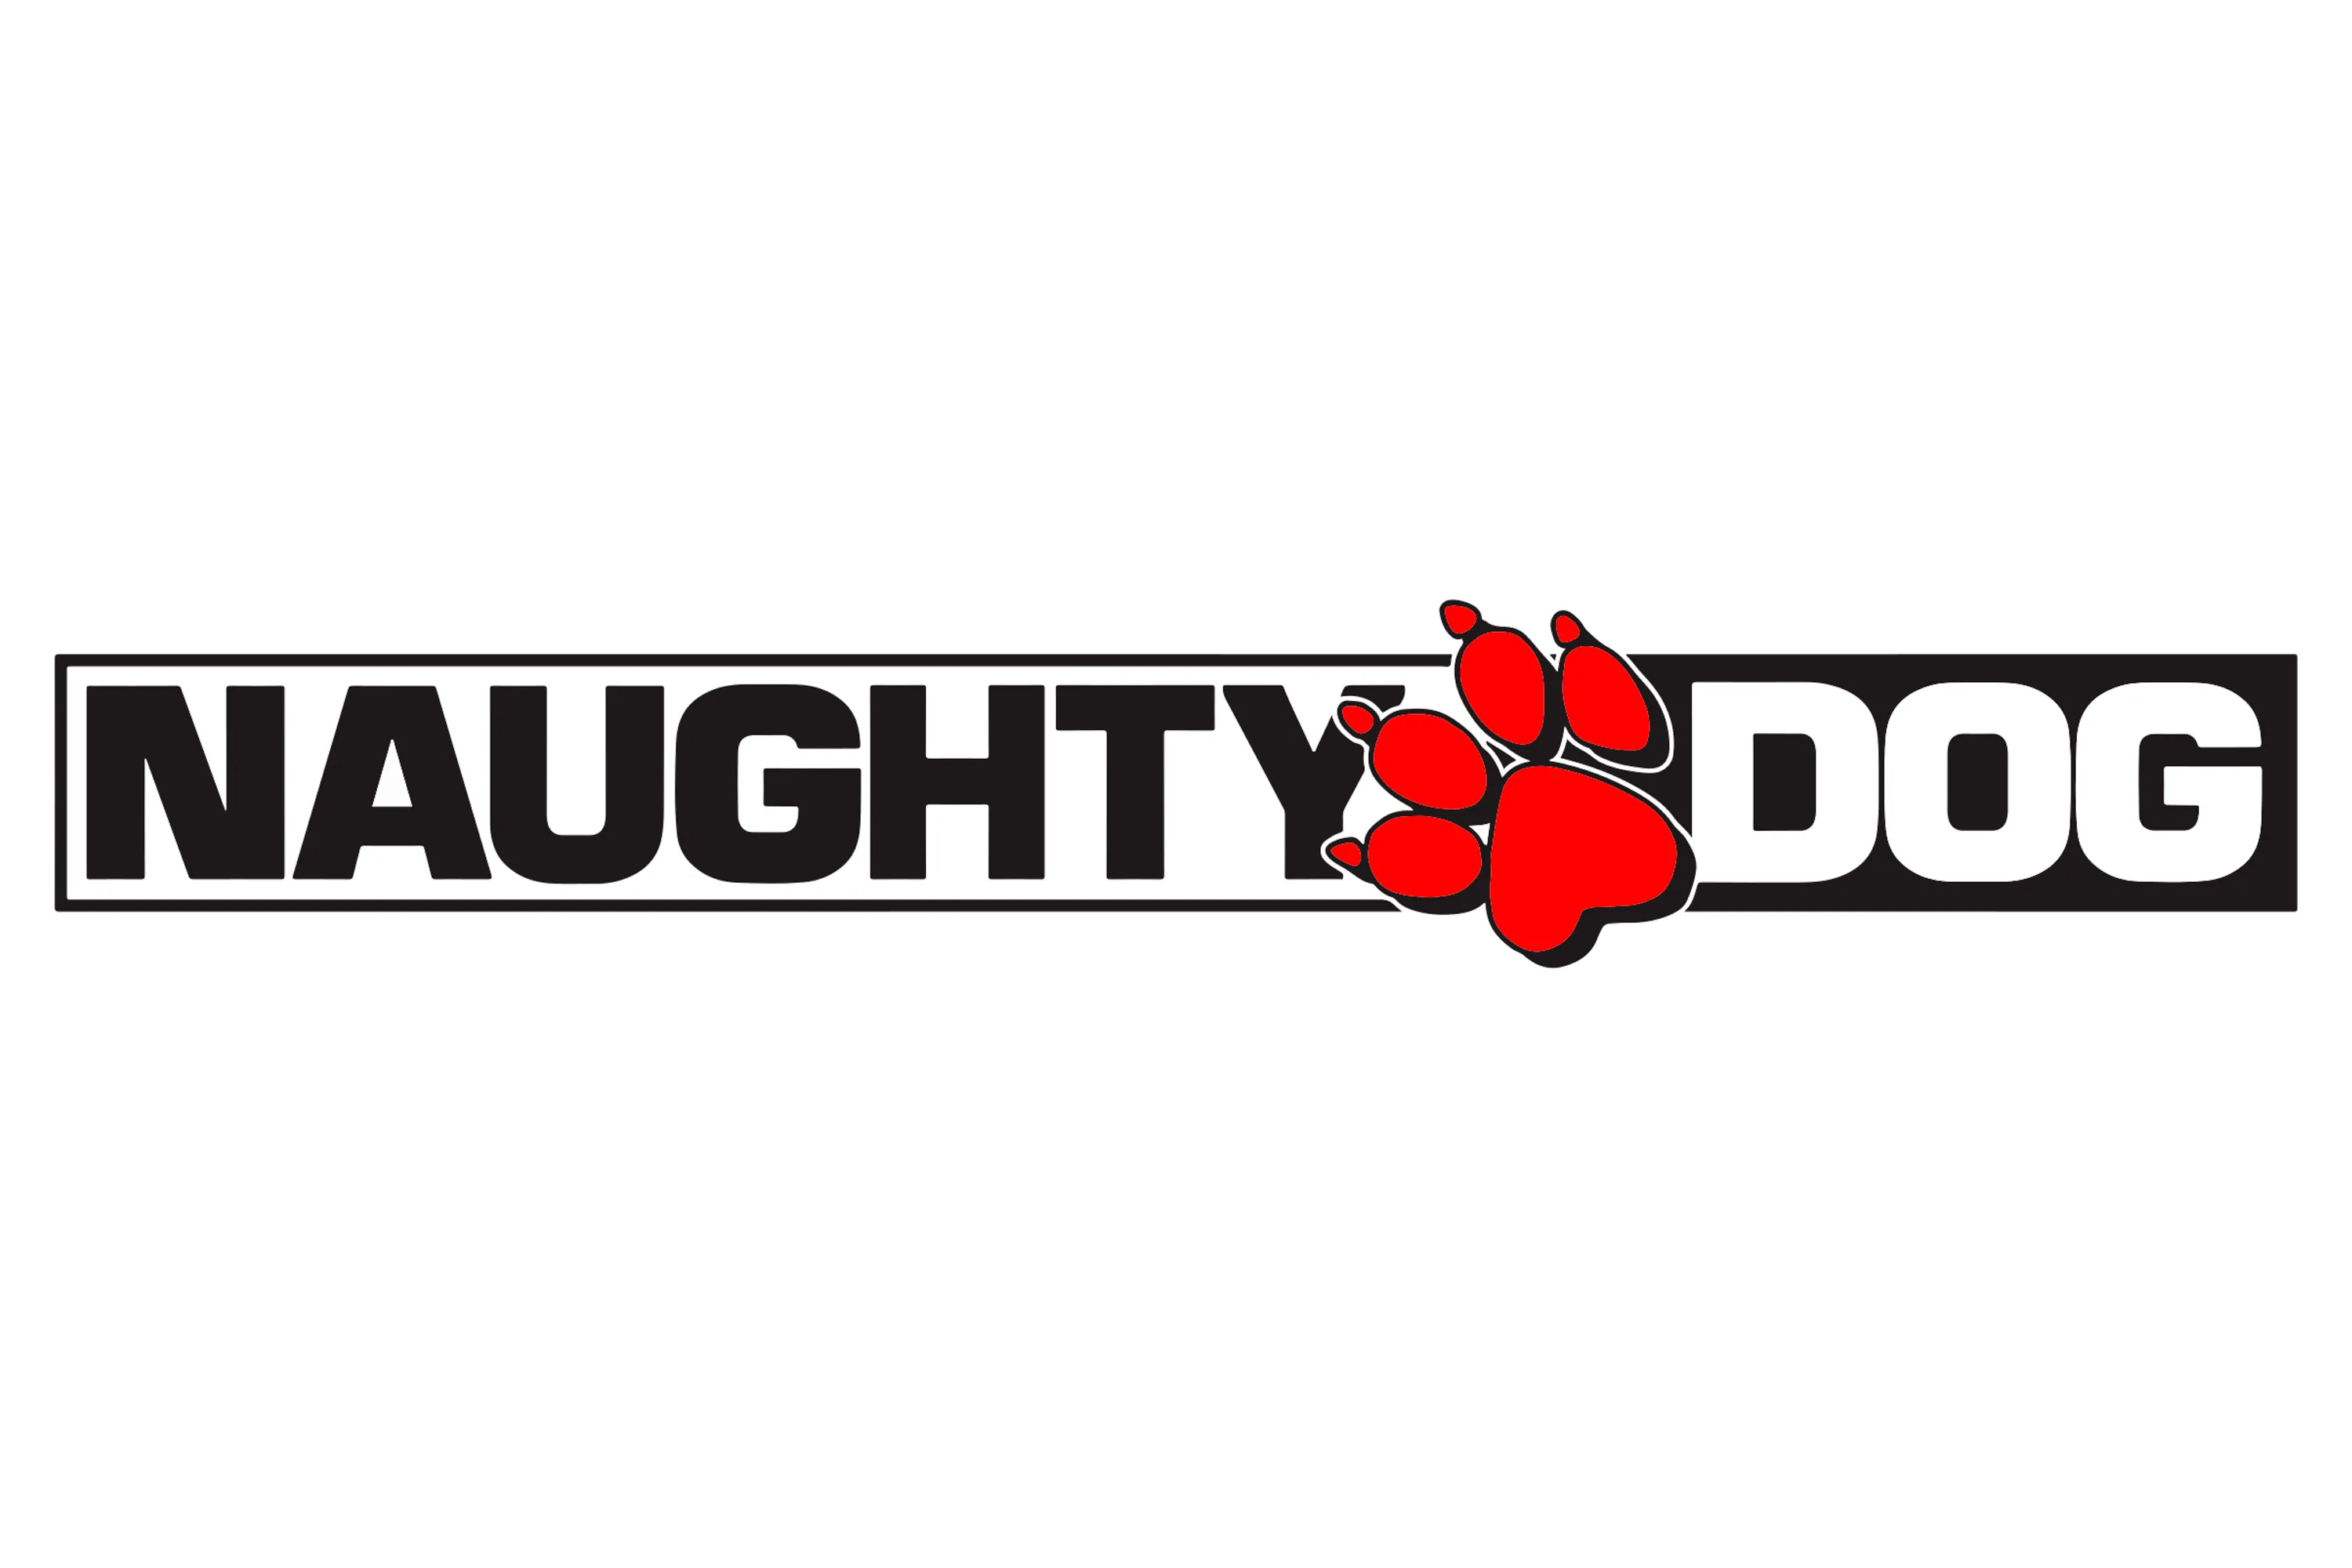 Naughty Dog logo company